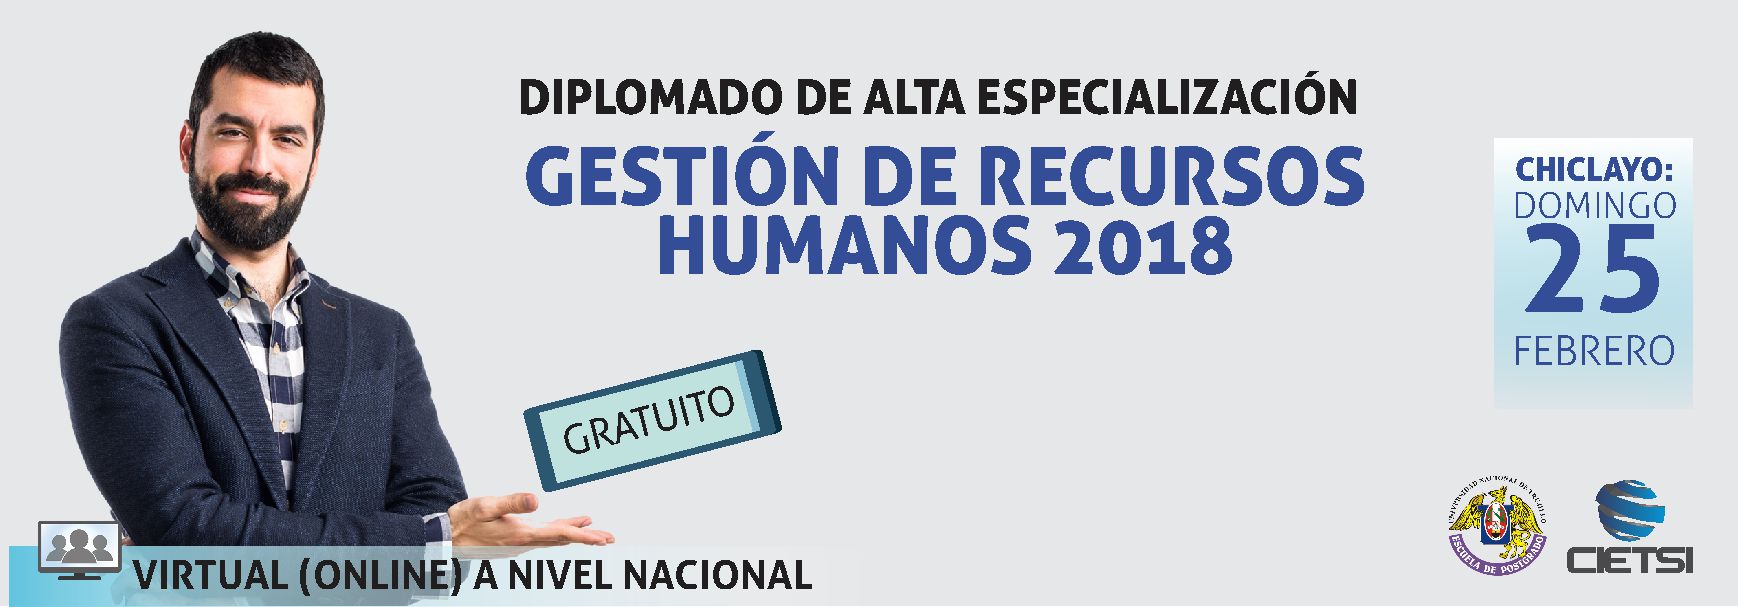 DIPLOMADO DE ALTA ESPECIALIZACIÓN EN GESTIÓN DE RECURSOS HUMANOS 2018